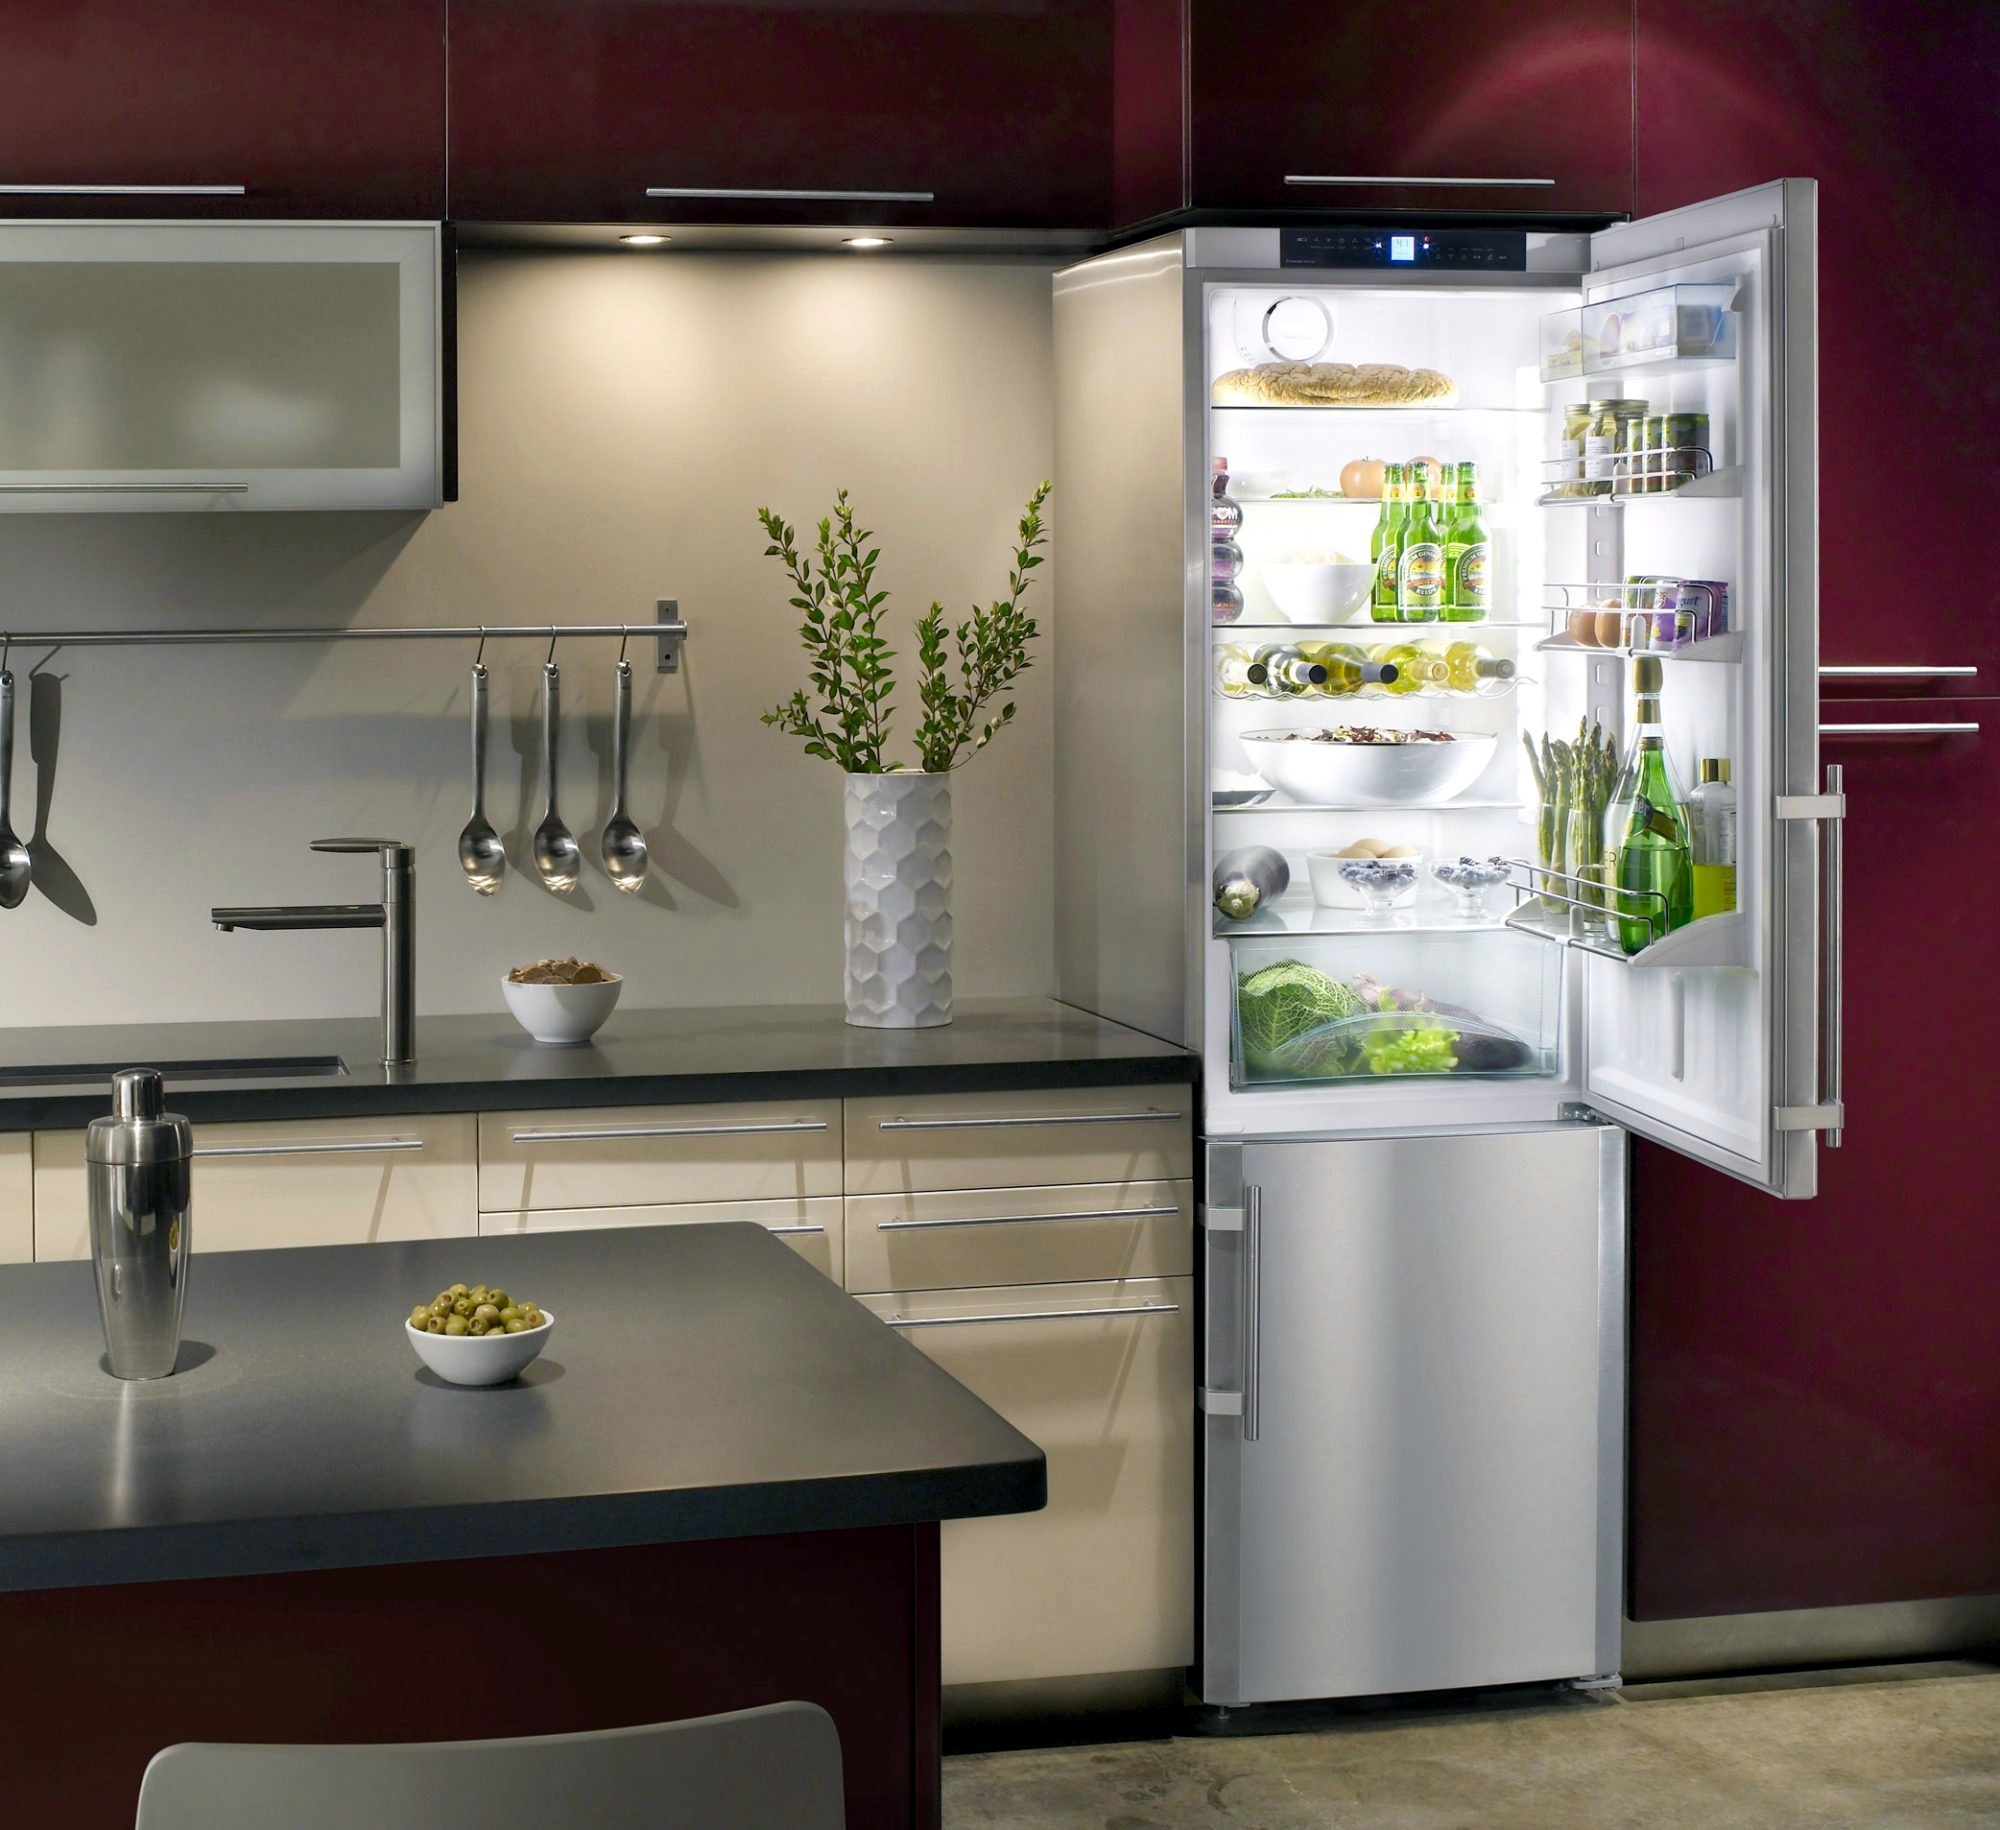 Надежный качественный холодильник. Холодильник в интерьере. Современные холодильники. Красивый холодильник. Холодильник в интерьере кухни.